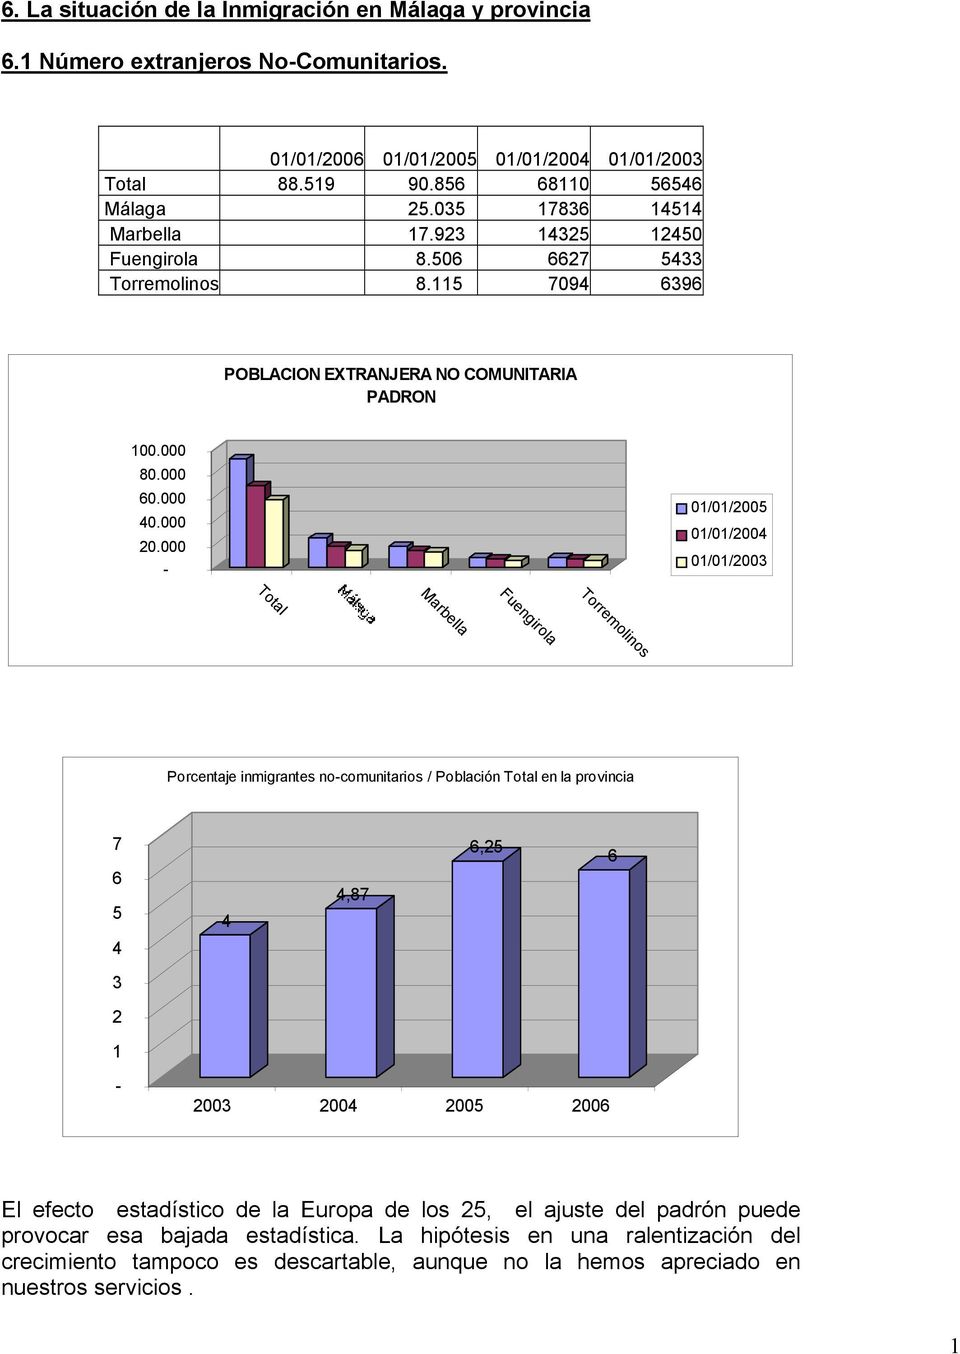 000-01/01/2005 01/01/2004 01/01/2003 Total Marbella Fuengirola Torremolinos Porcentaje inmigrantes no-comunitarios / Población Total en la provincia 7 6 5 4 4,87 6,25 6 4 3 2 1-2003 2004 2005 2006